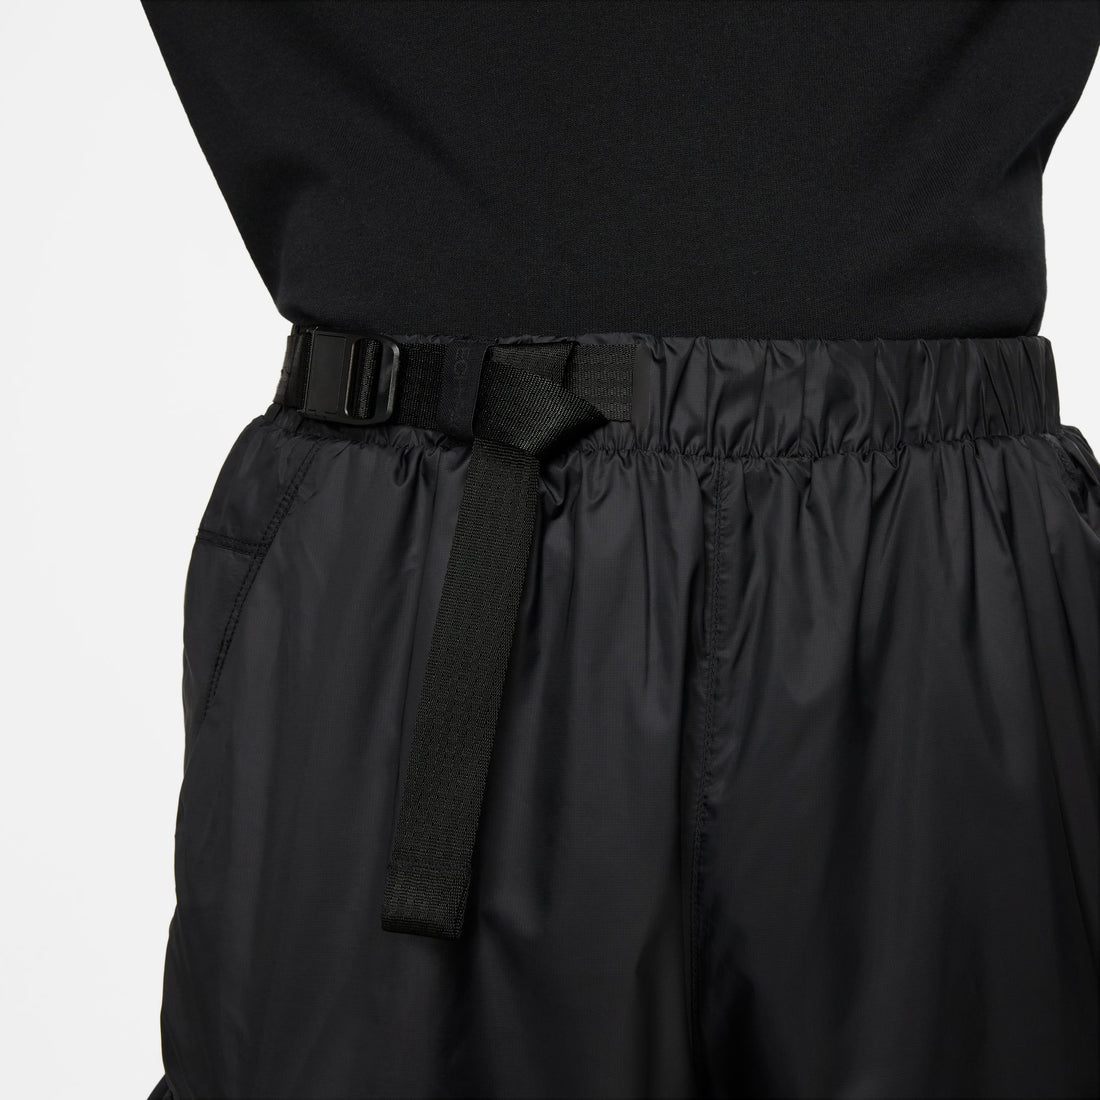 Nike Sportswear Repel Tech Pack Lined Woven Pants (Black/Black)